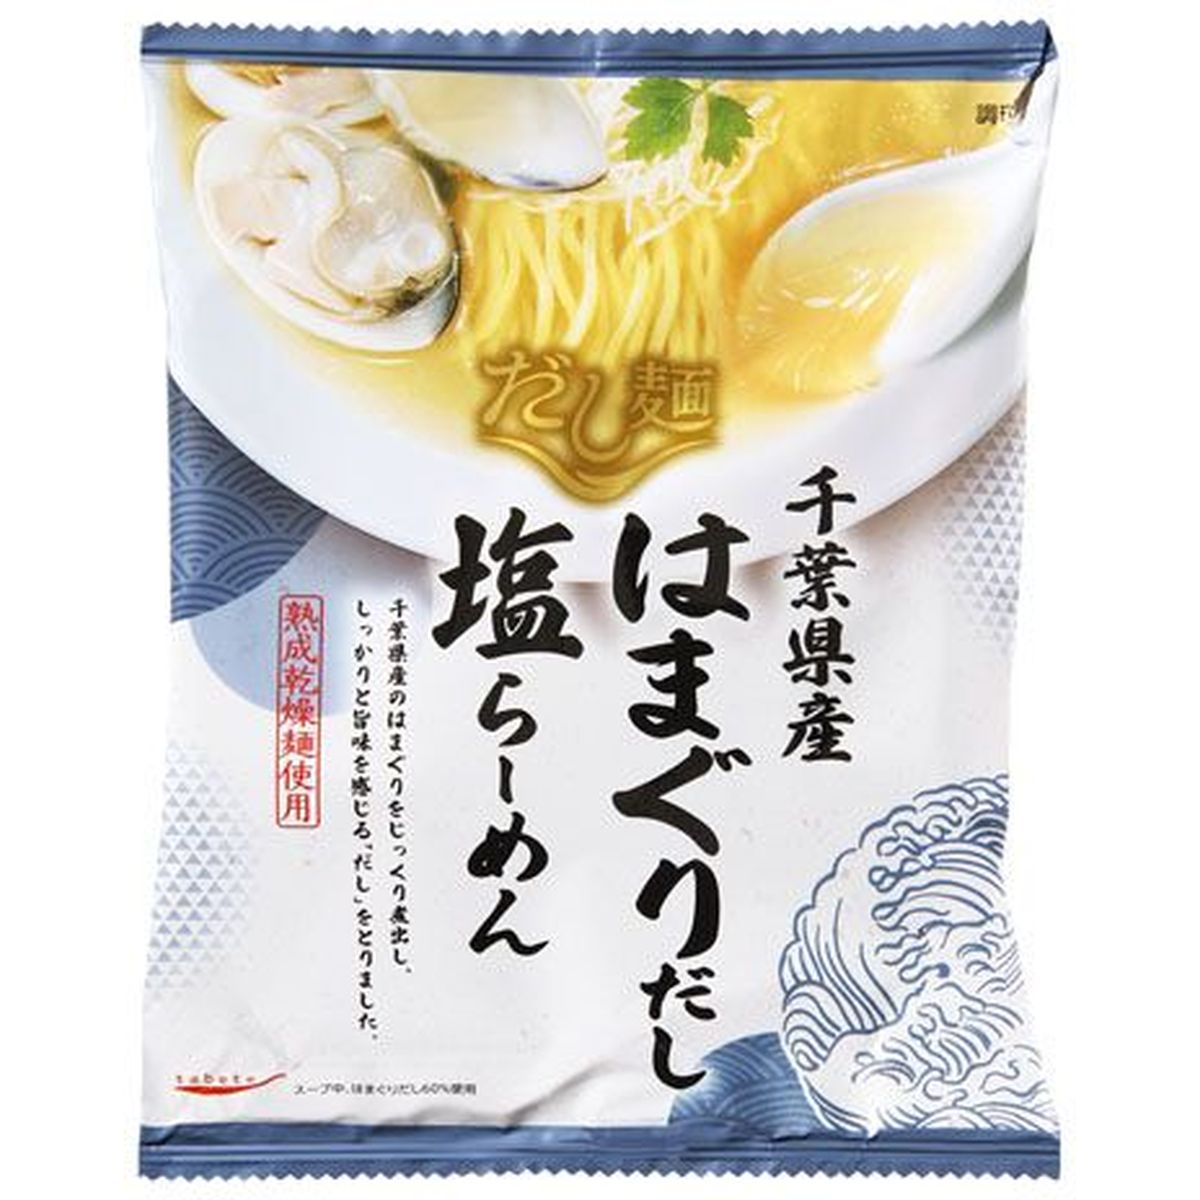 【10個入リ】新ダシ麺 千葉県産ハマグリダシ塩ラーメン 108g